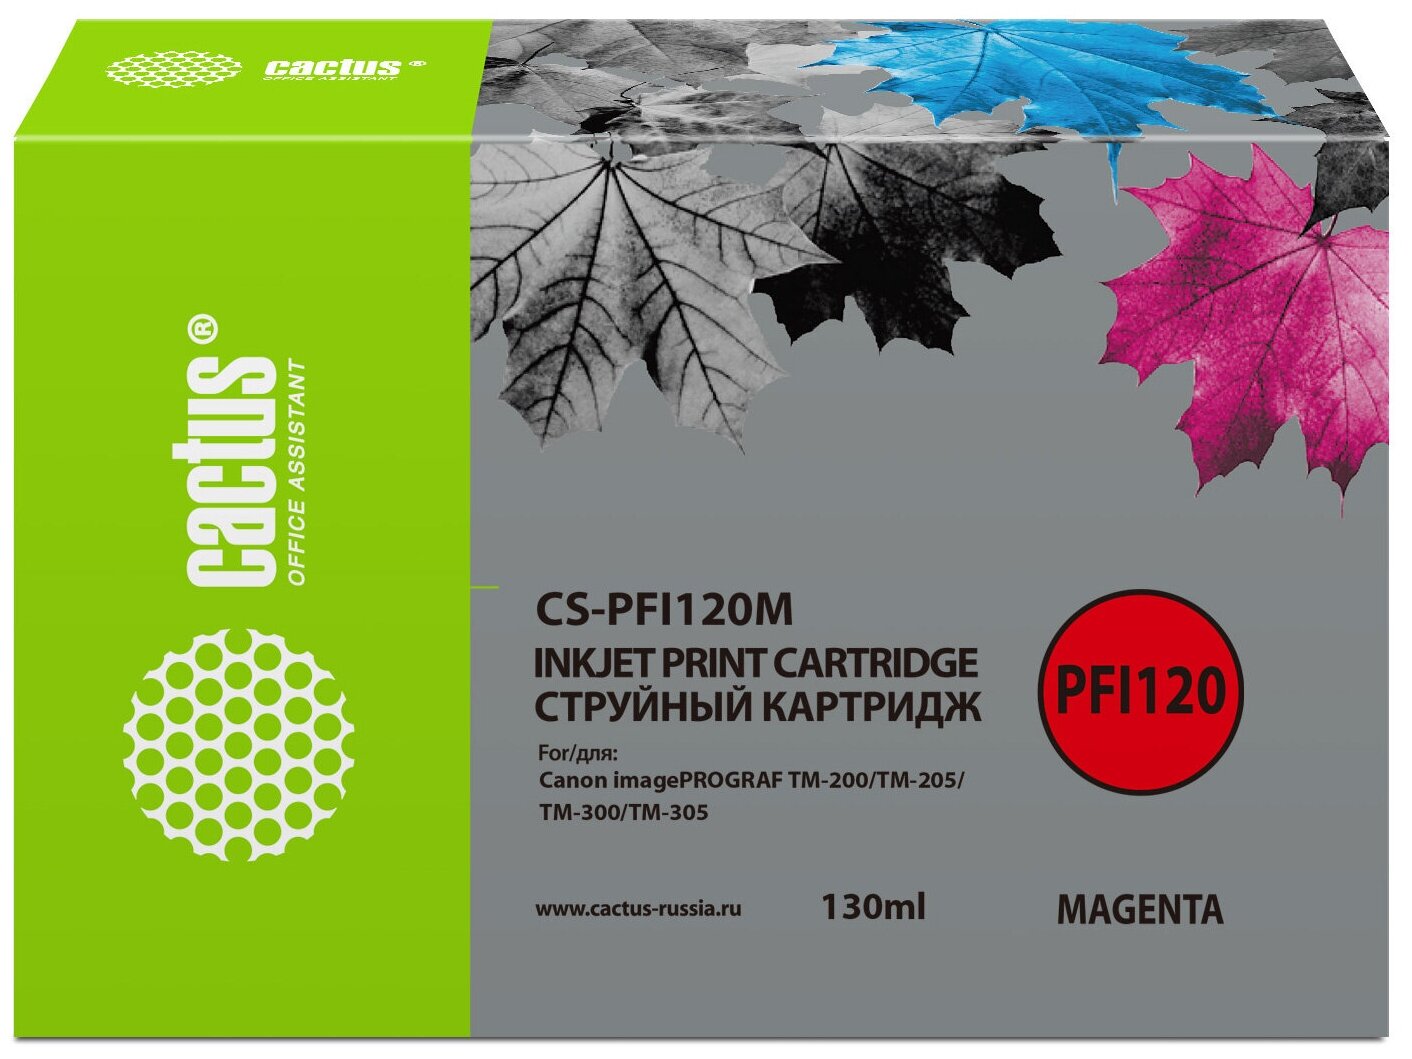 Картридж PFI-120 Magenta для струйного принтера Кэнон Canon imagePROGRAF TM-200 TM-205 TM-300 TM-305